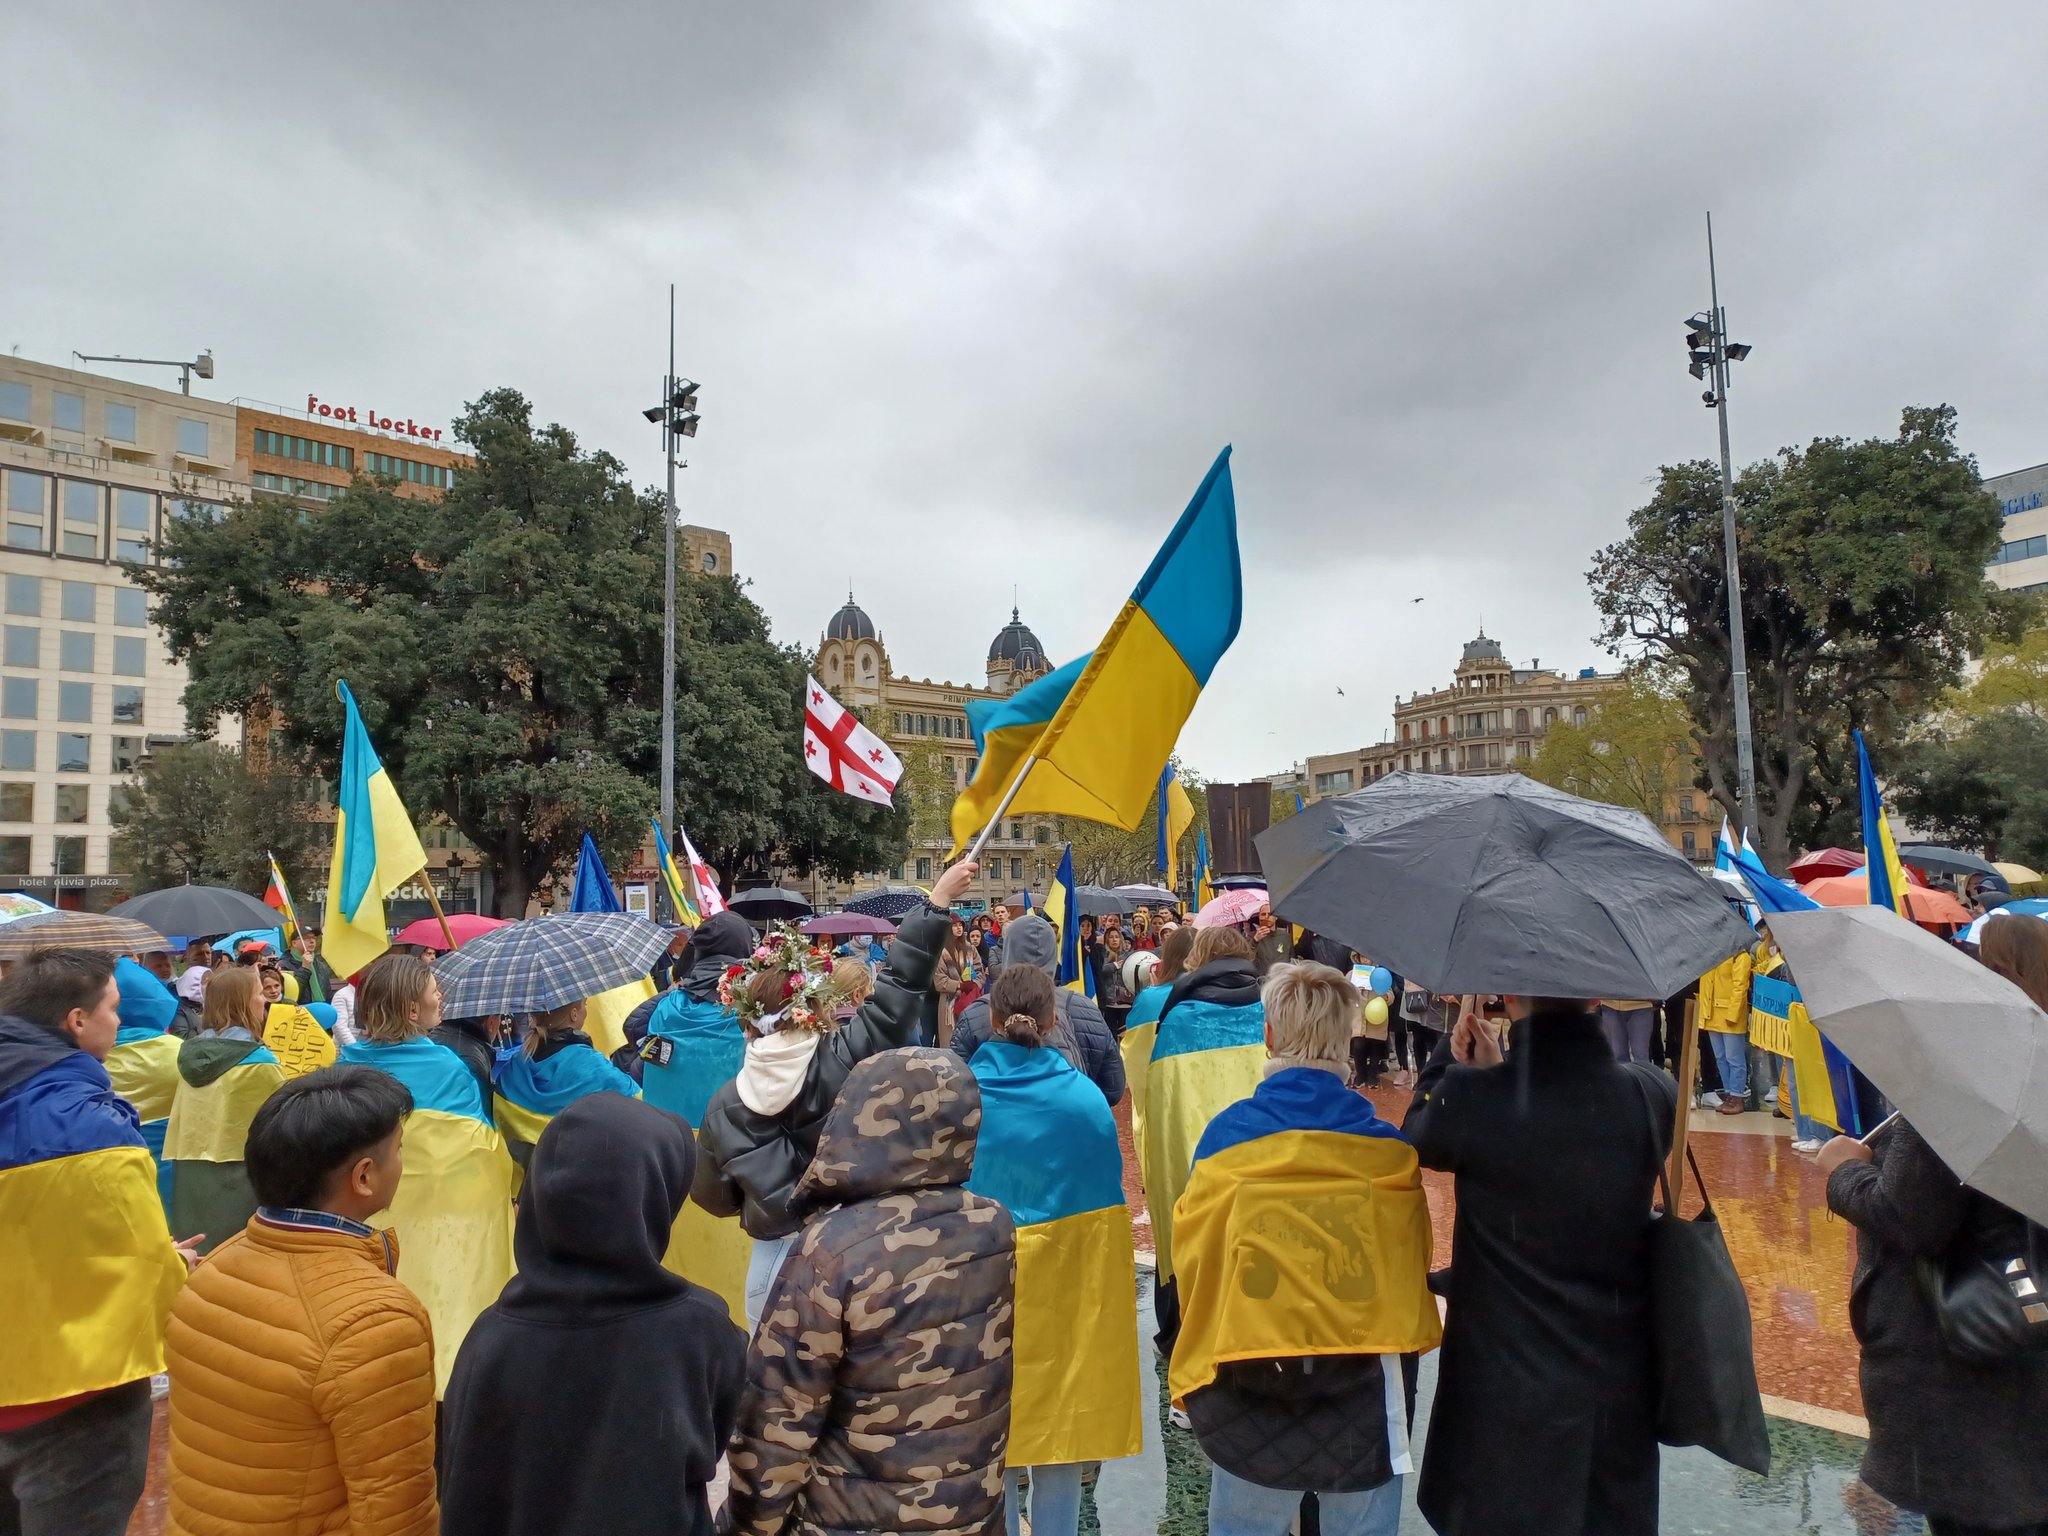 Marcha por Ucrania en Barcelona: "Putin 'carallot'"